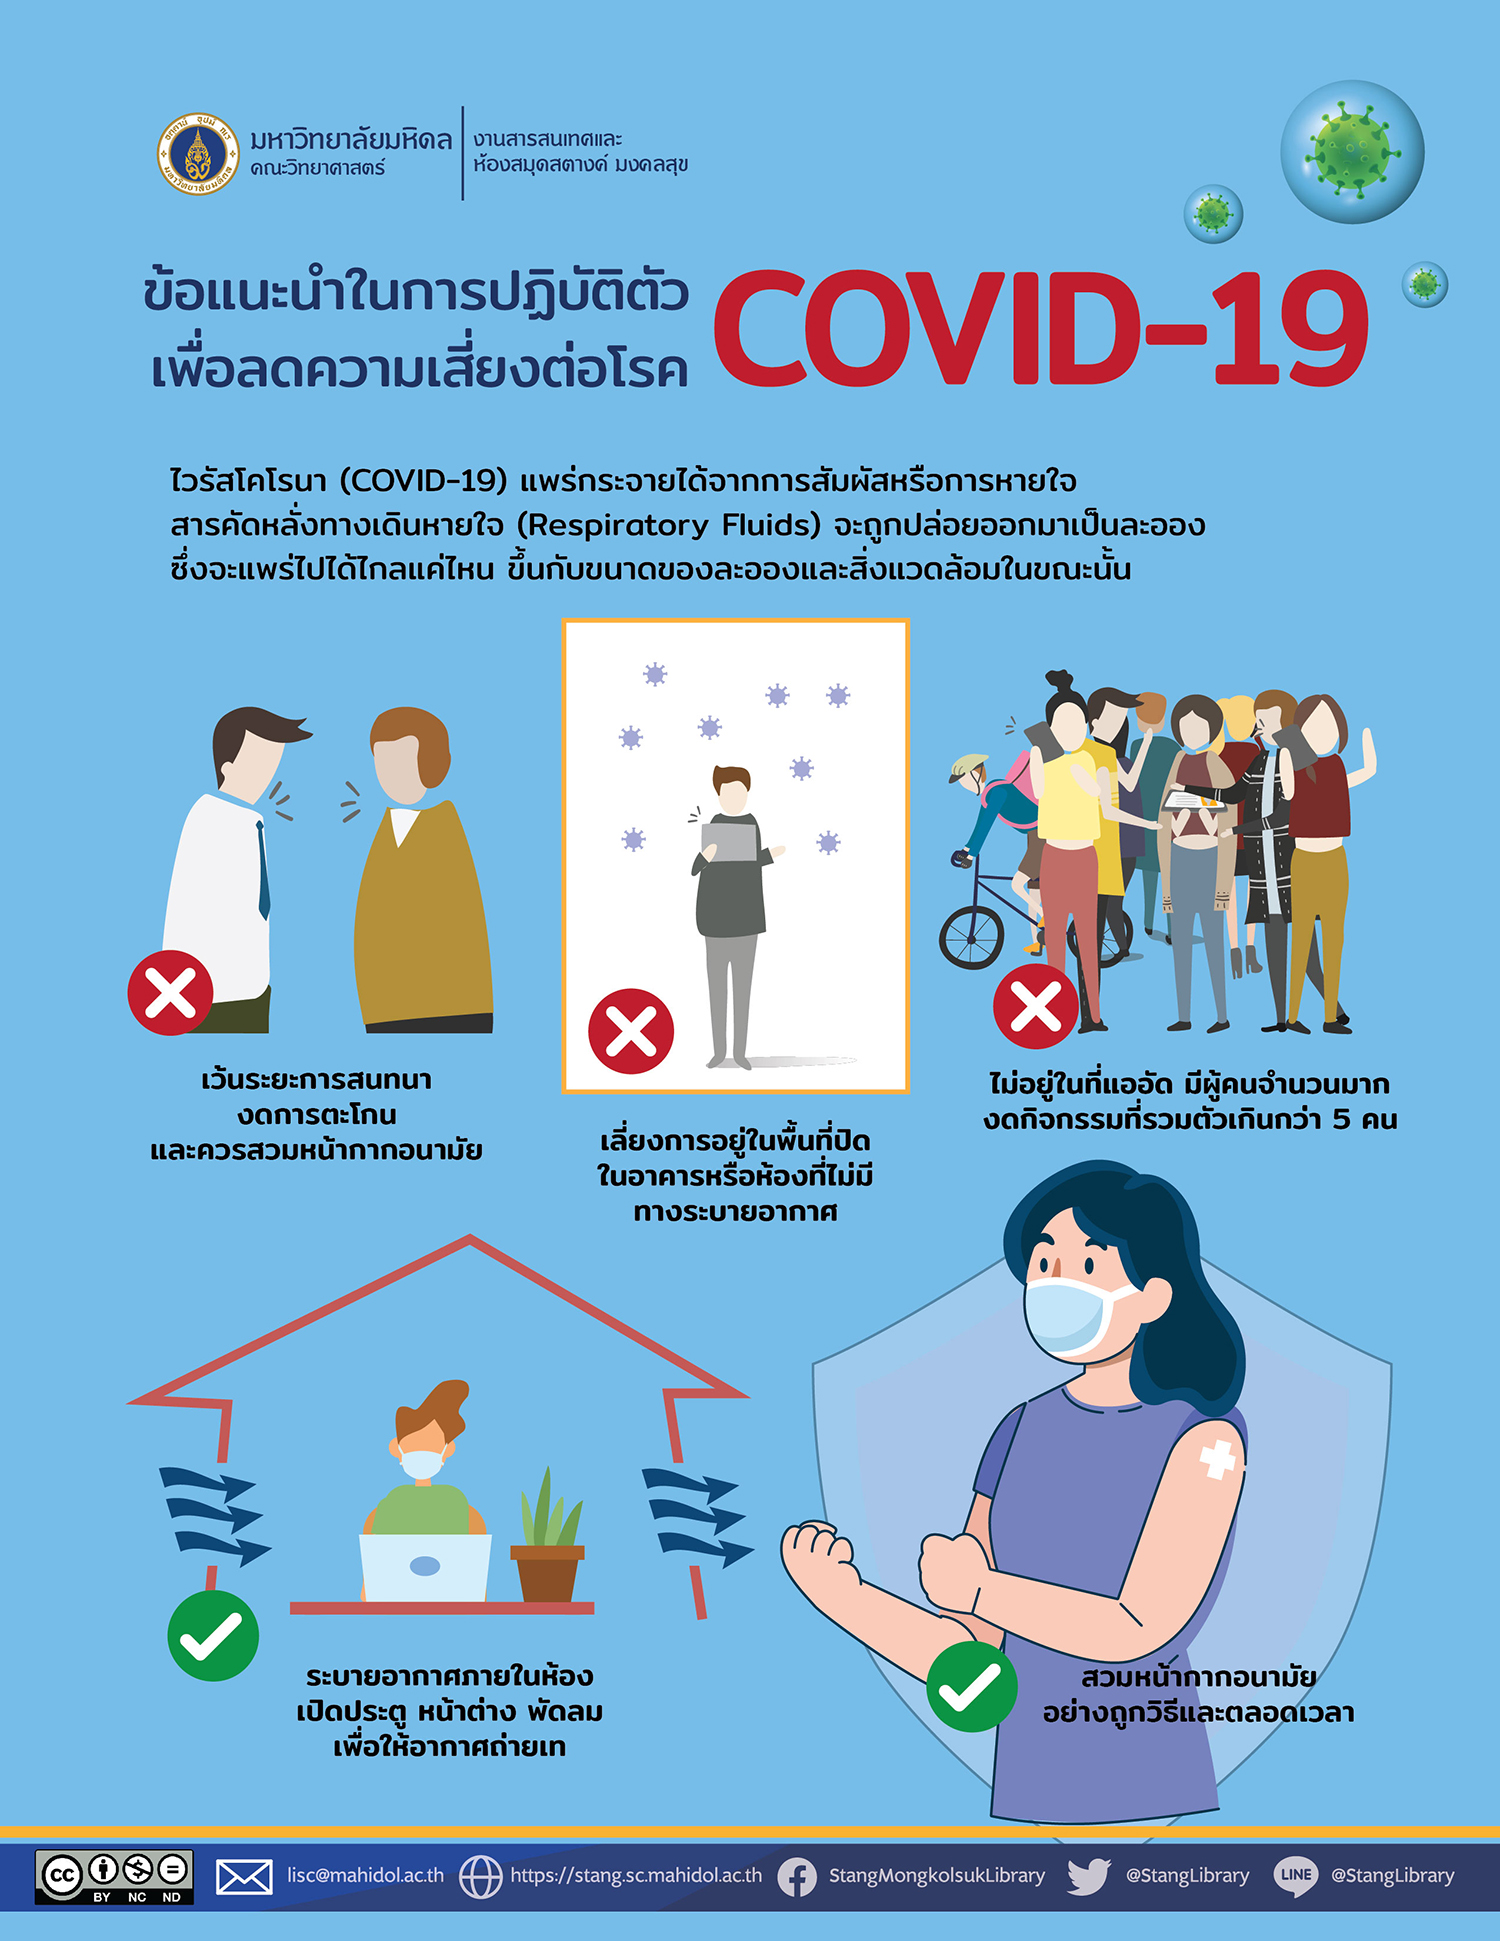 ข้อแนะนำในการปฏิบัติตัวเพื่อลดความเสี่ยงต่อโรค COVID-19